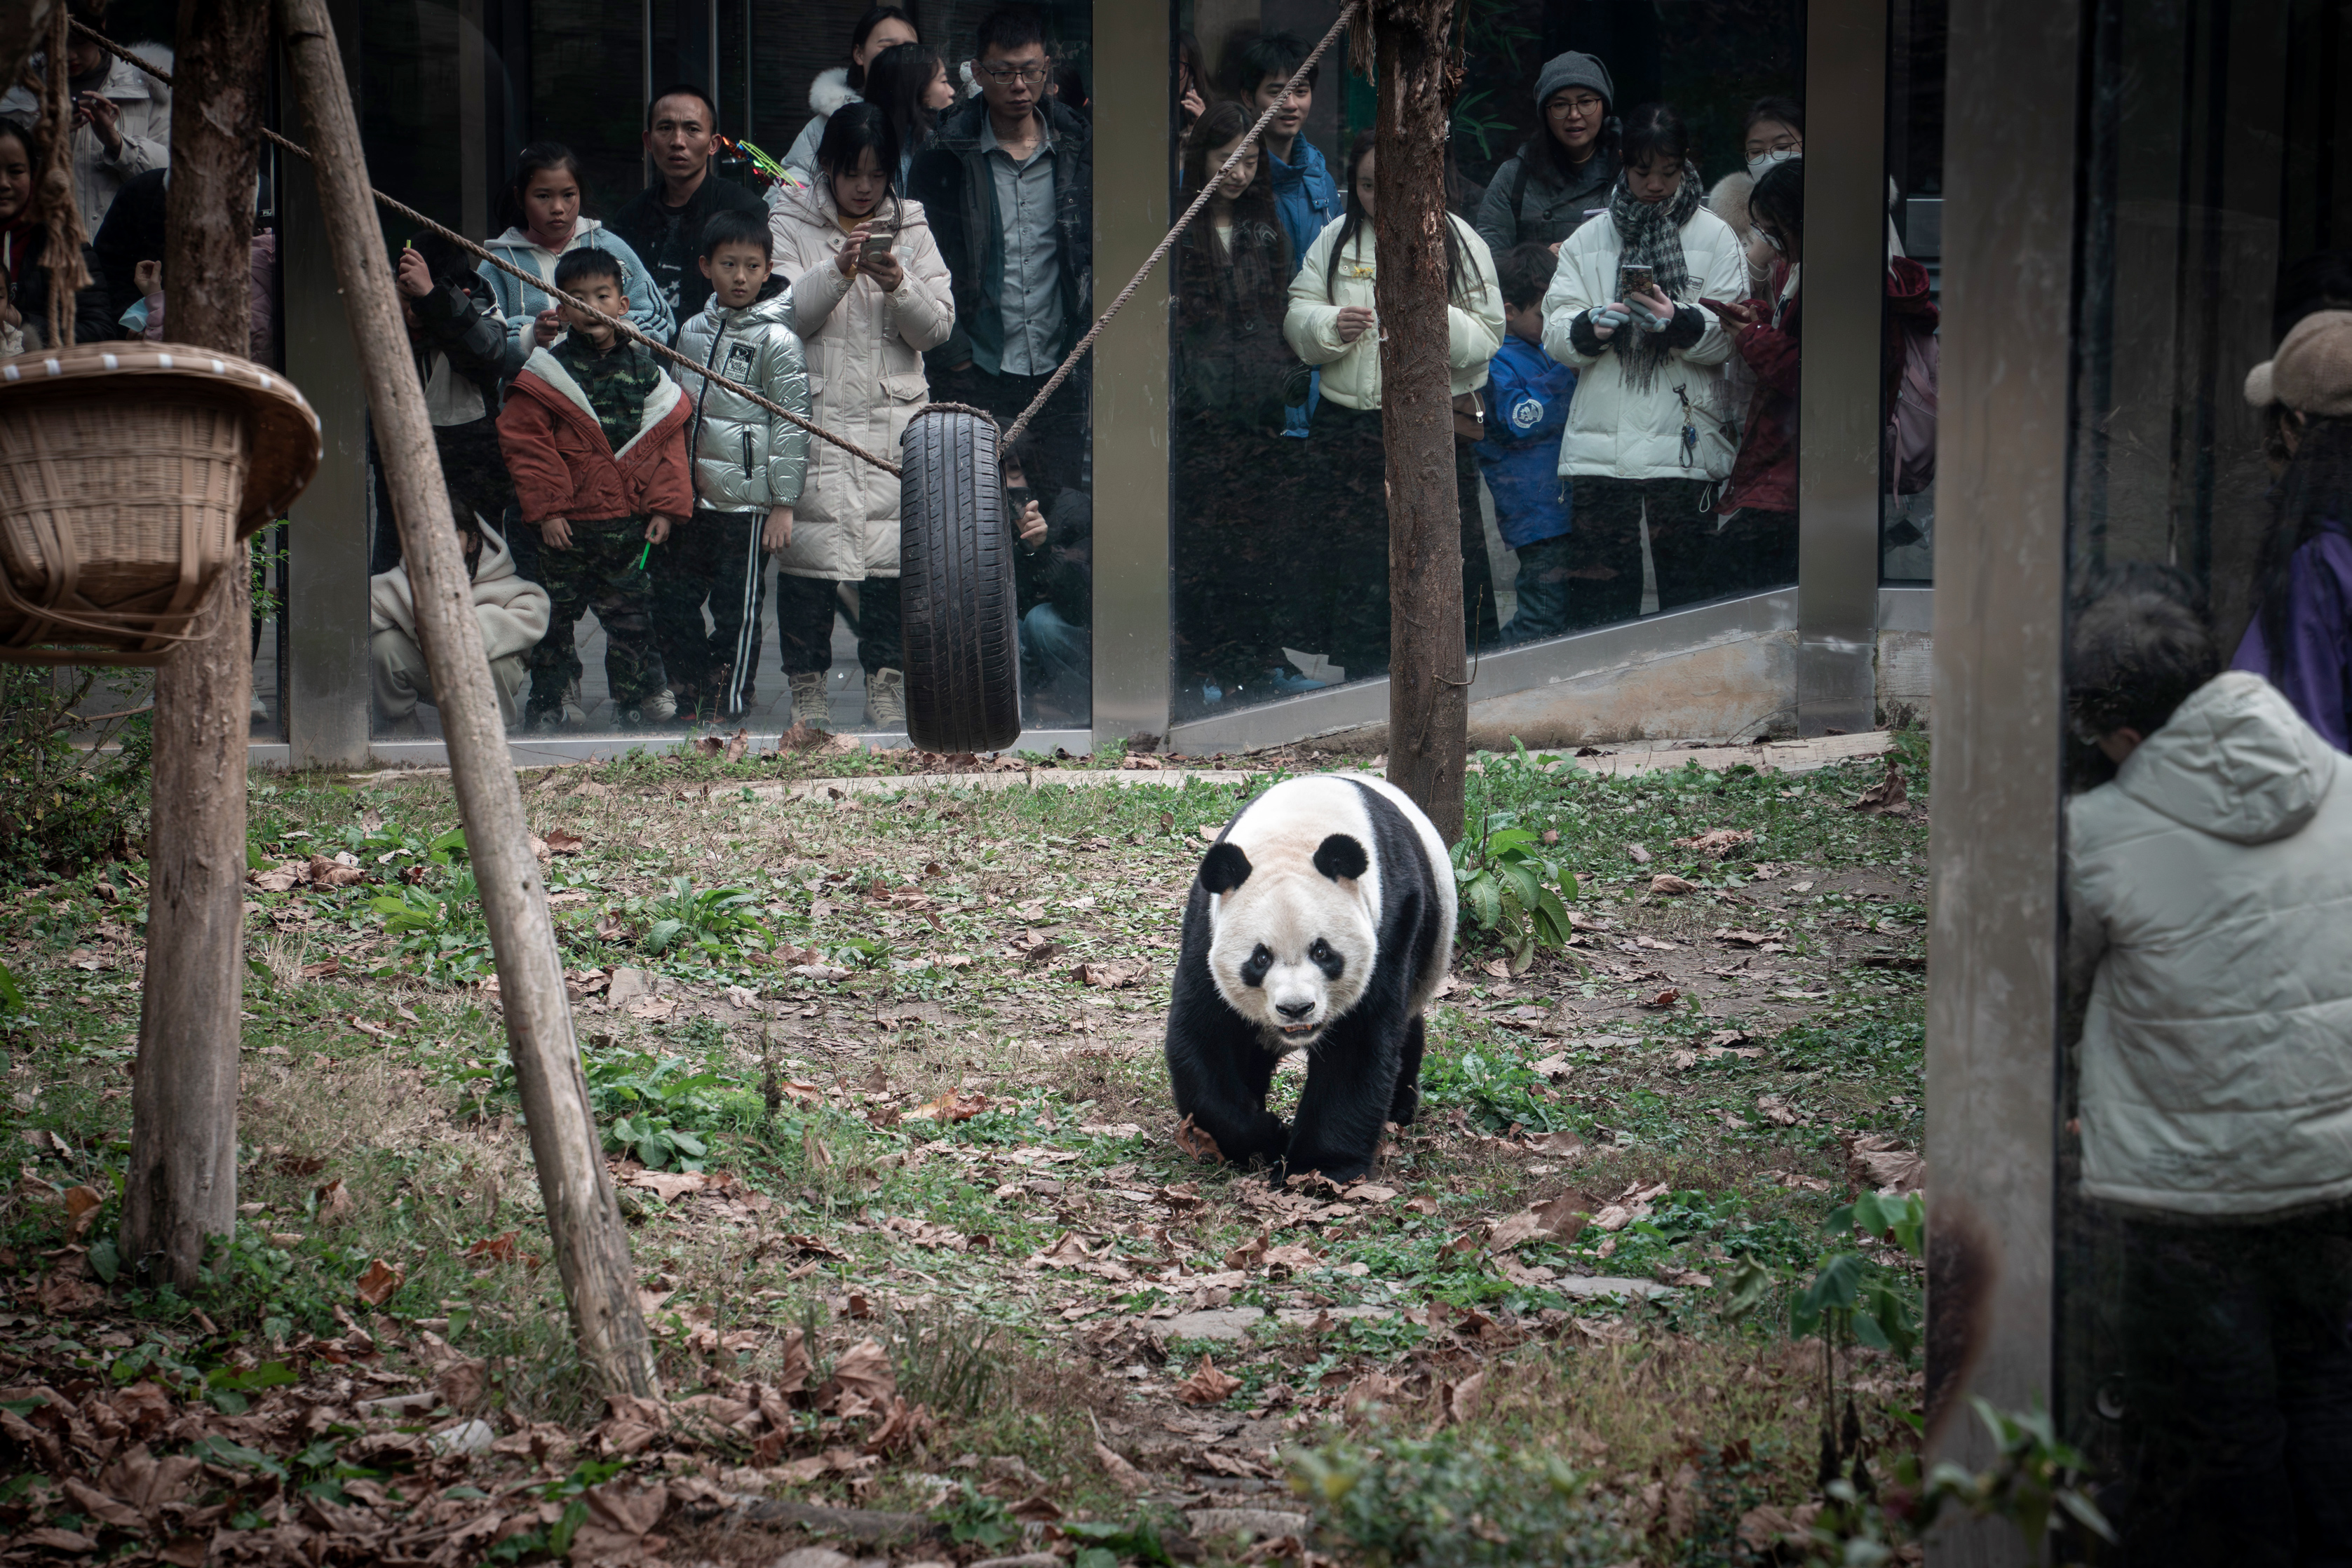 Animals Panda Zoo People Grass China 3354x2236